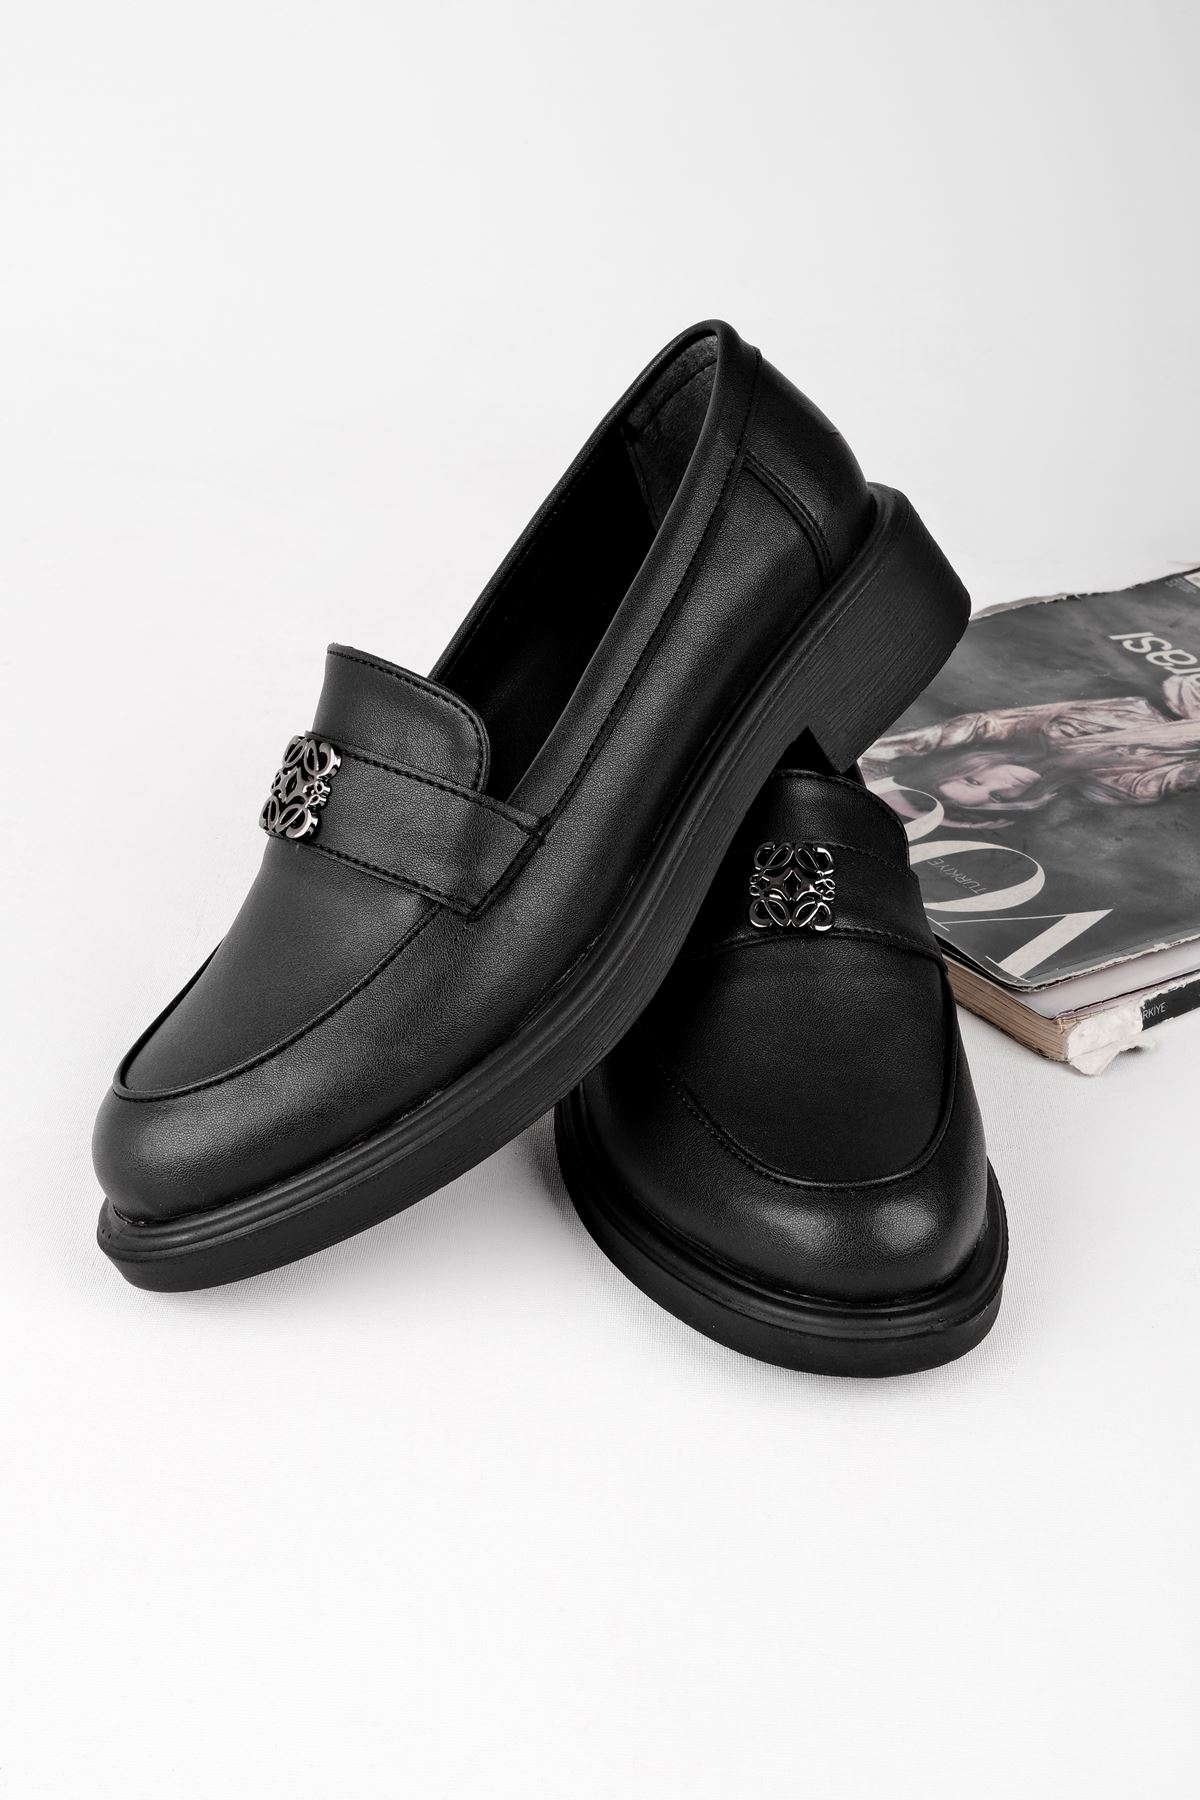 Lahey Kadın Şerit ve Toka Detaylı Günlük Ayakkabı-siyah